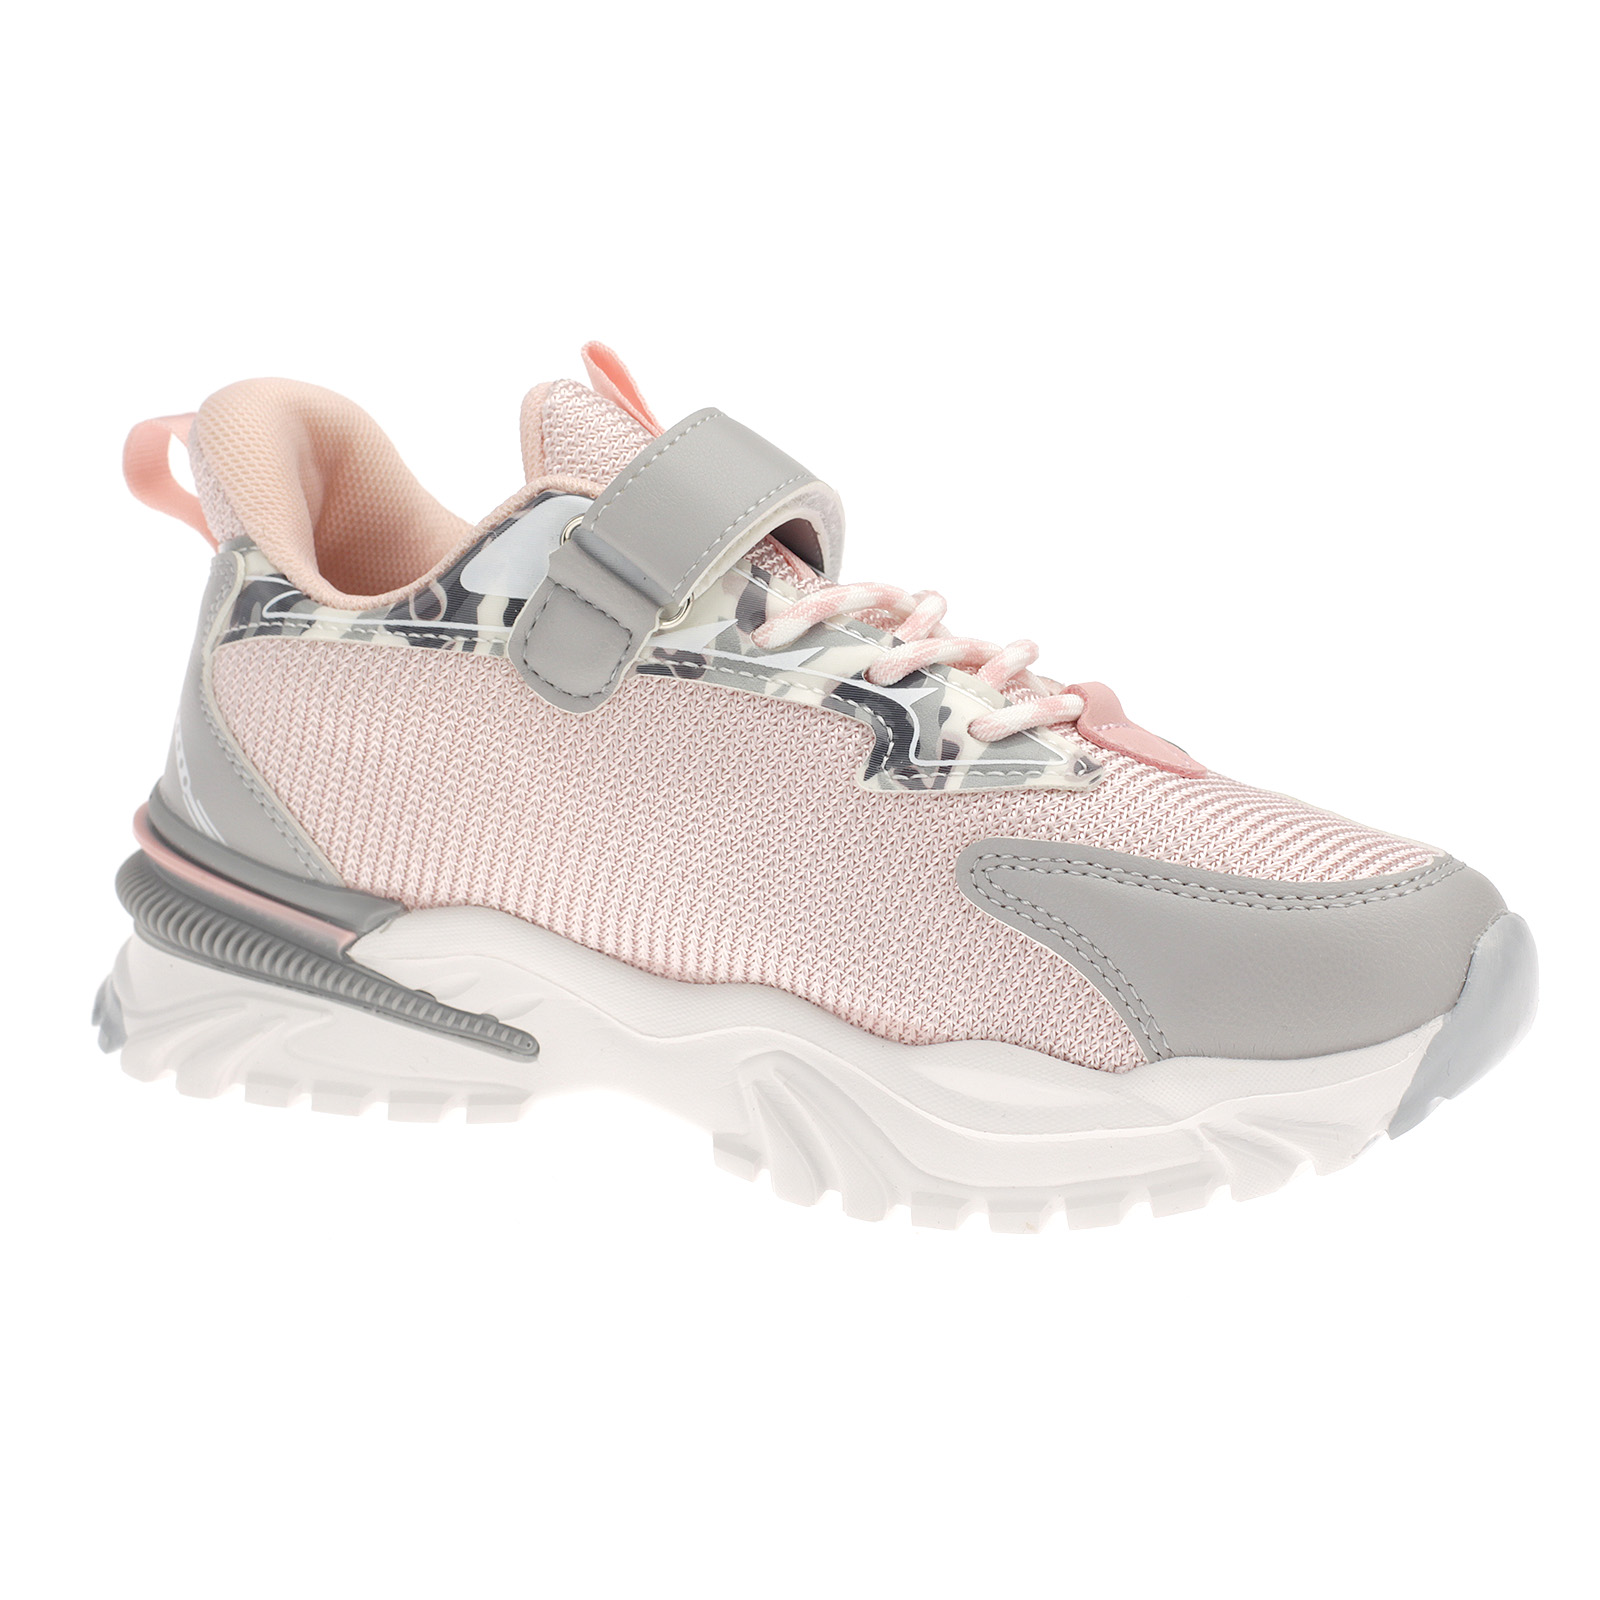 Kinderschuhe Sneaker Sportschuhe Turnschuhe Laufschuhe Klettverschluss 4052 Grau Pink EUR 36